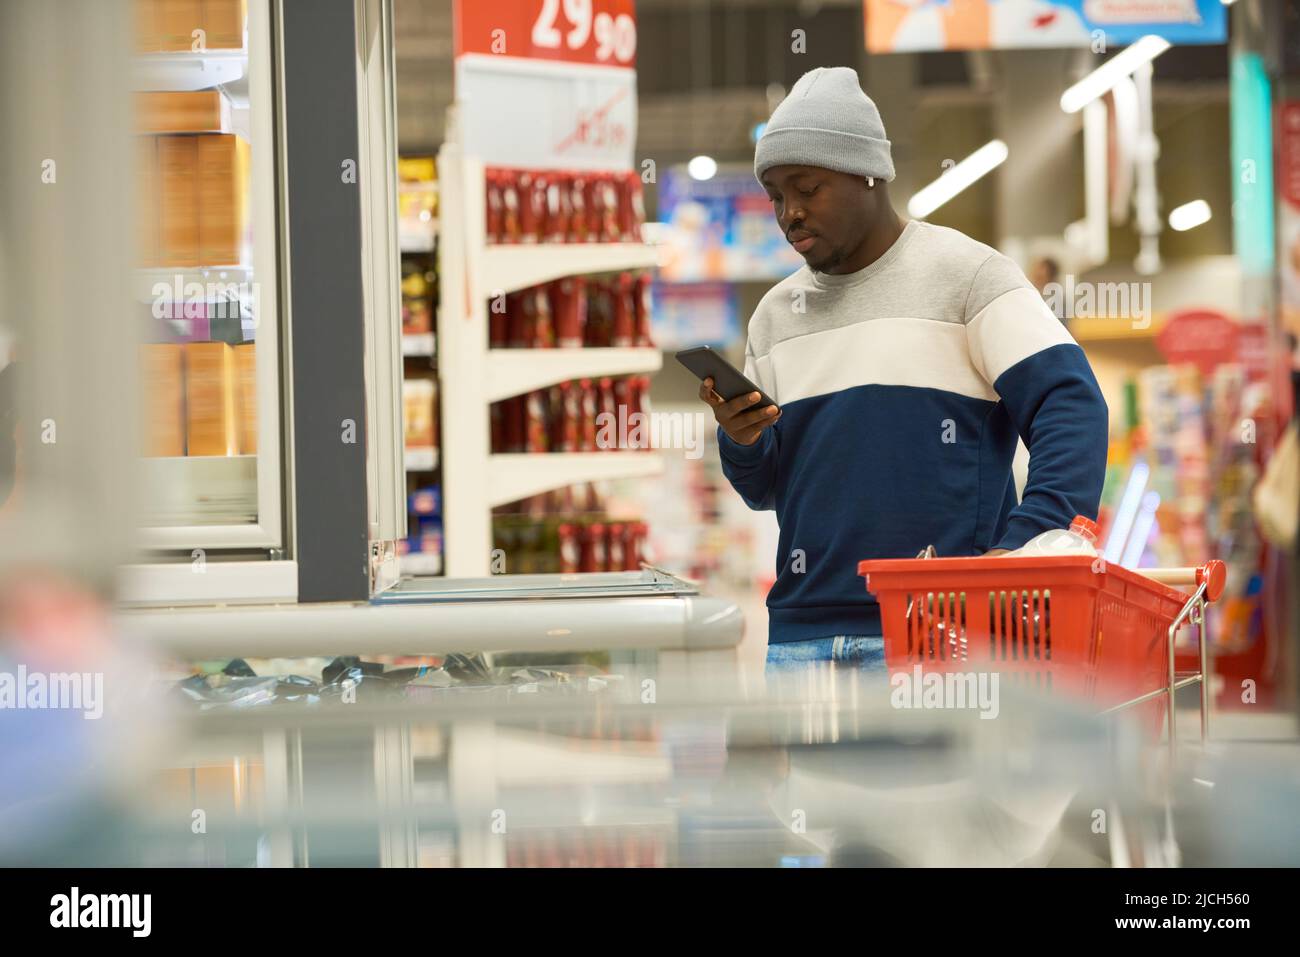 Junger Zoomer in stilvoller Casualwear scrollt mit dem Smartphone, während er in einer der Supermarktabteilungen Lebensmittel auswählt Stockfoto